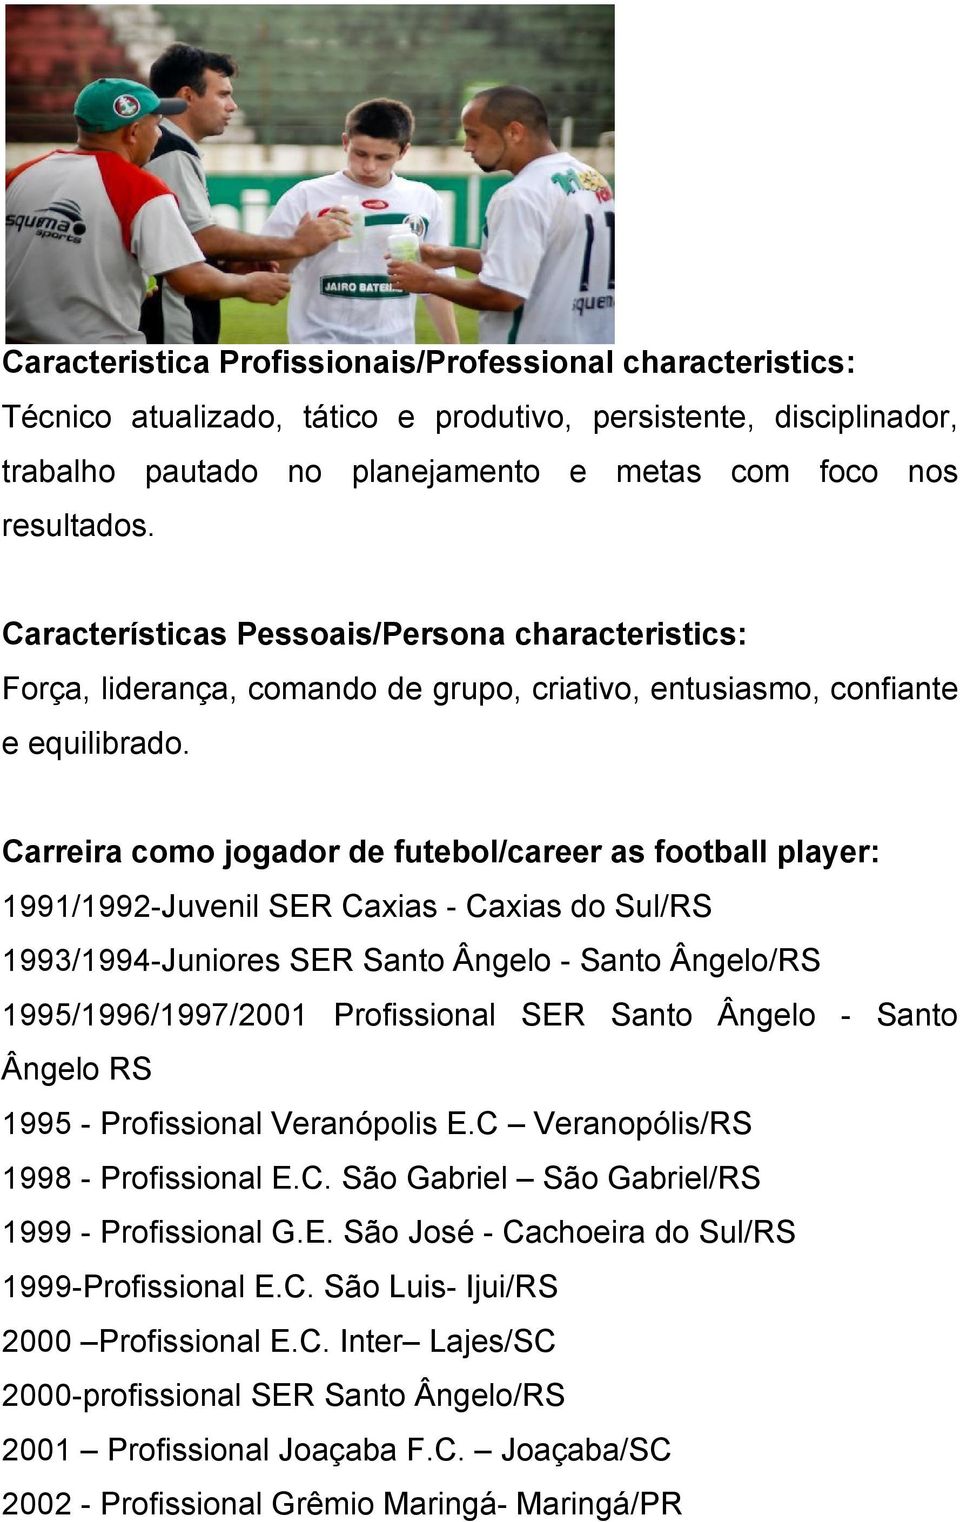 Carreira como jogador de futebol/career as football player: 1991/1992-Juvenil SER Caxias - Caxias do Sul/RS 1993/1994-Juniores SER Santo Ângelo - Santo Ângelo/RS 1995/1996/1997/2001 Profissional SER